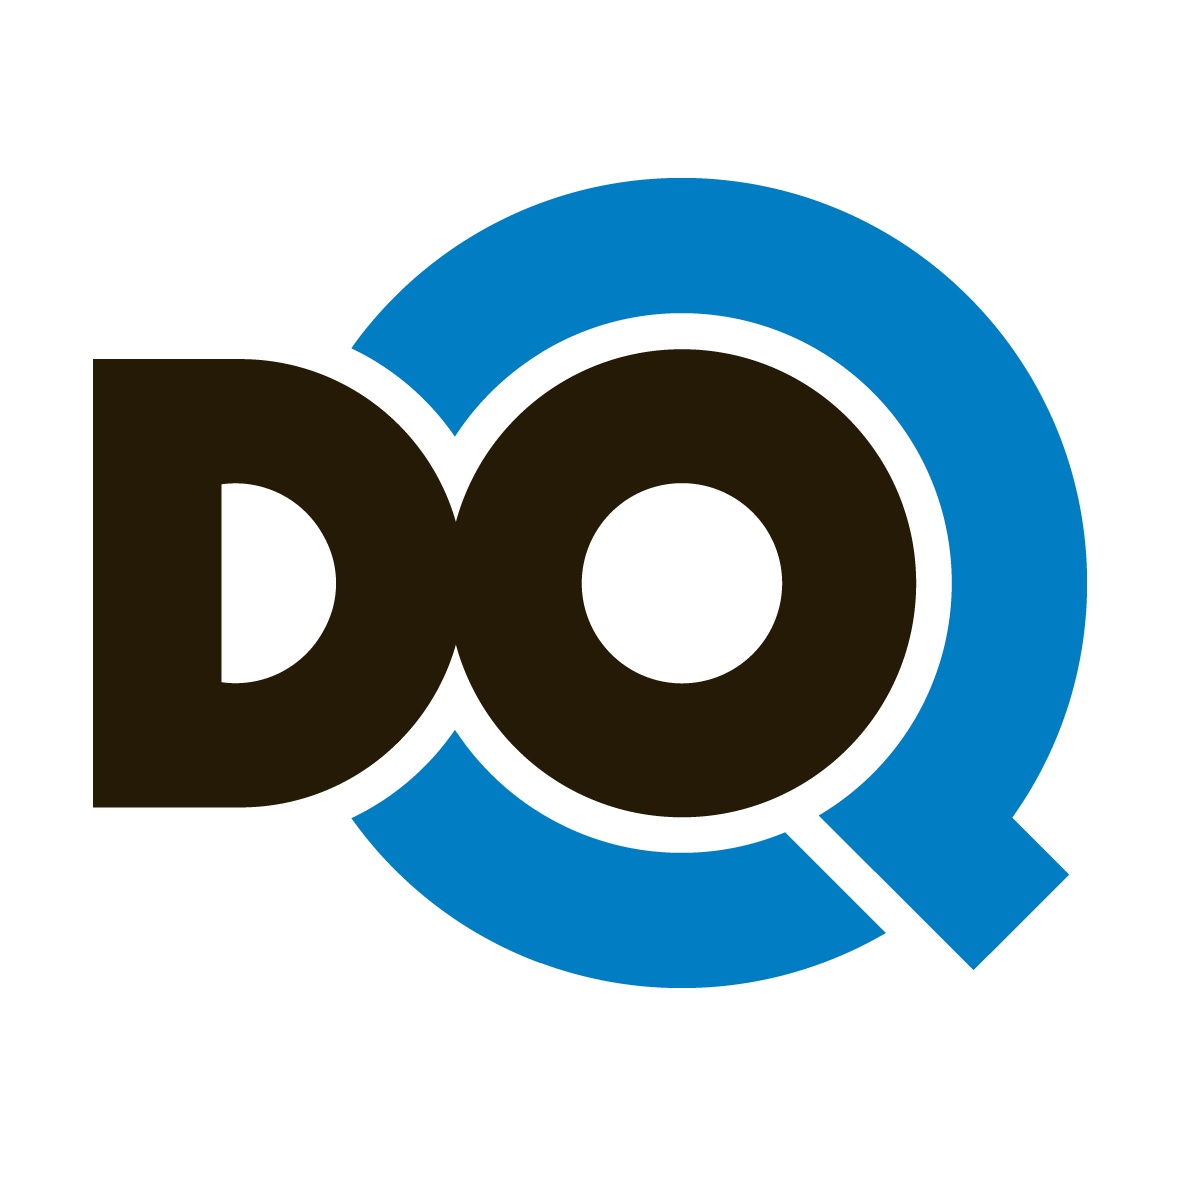 A DoQ csatorna 0,3 százalék körüli közönségaránnyal rendelkezik